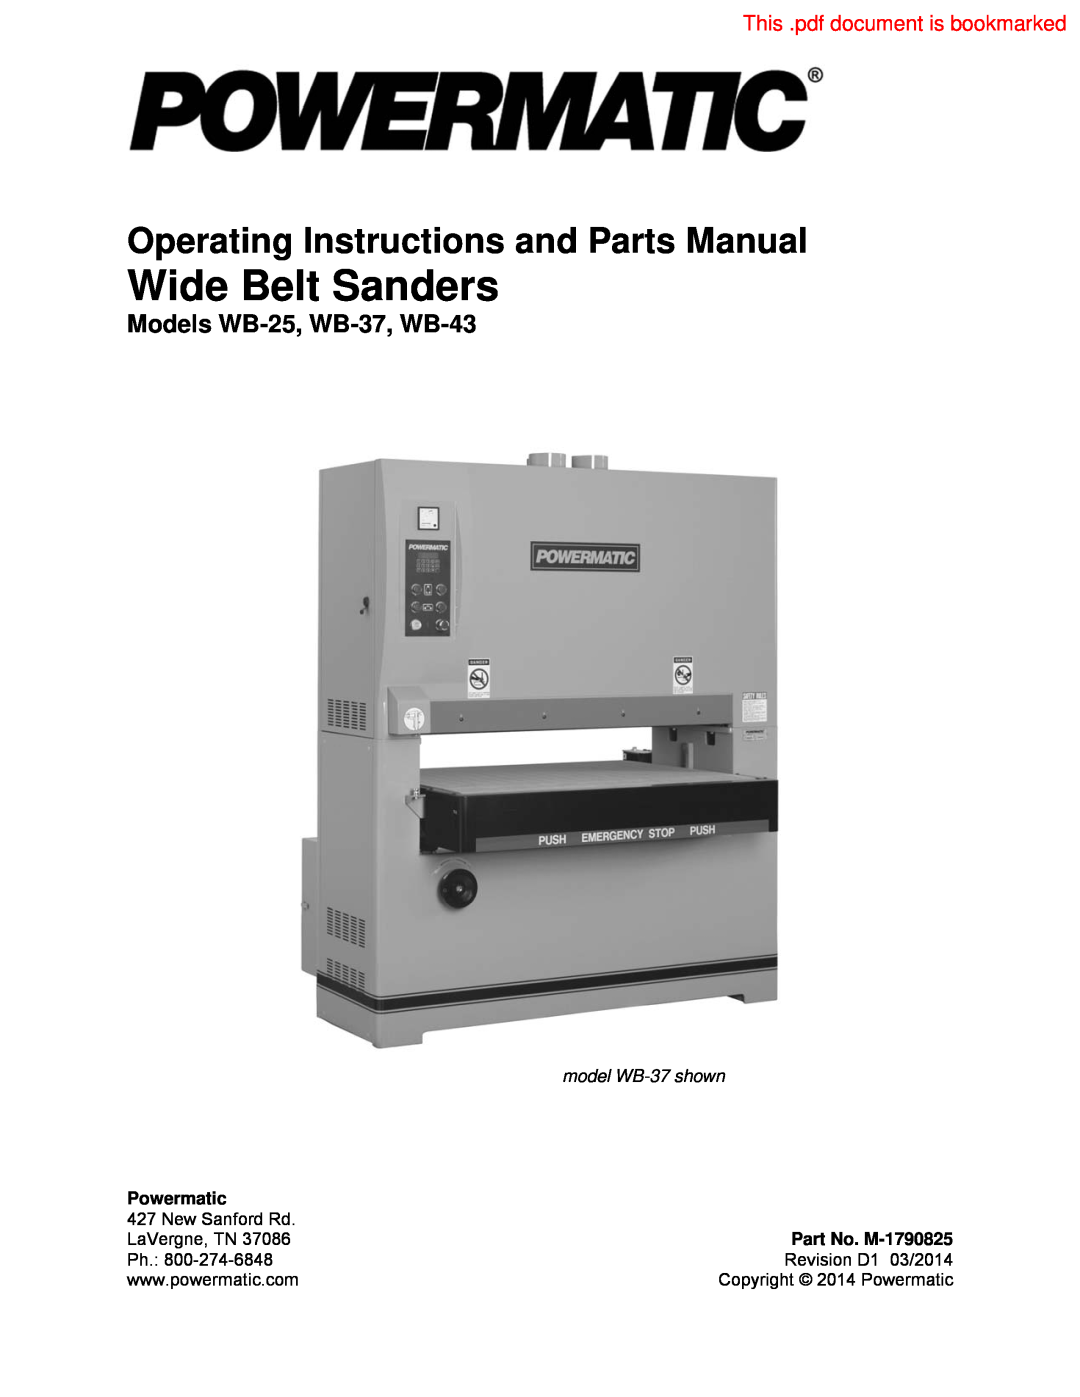 Powermatic operating instructions Models WB-25, WB-37, WB-43, model WB-37 shown, Powermatic, Part No. M-1790825 